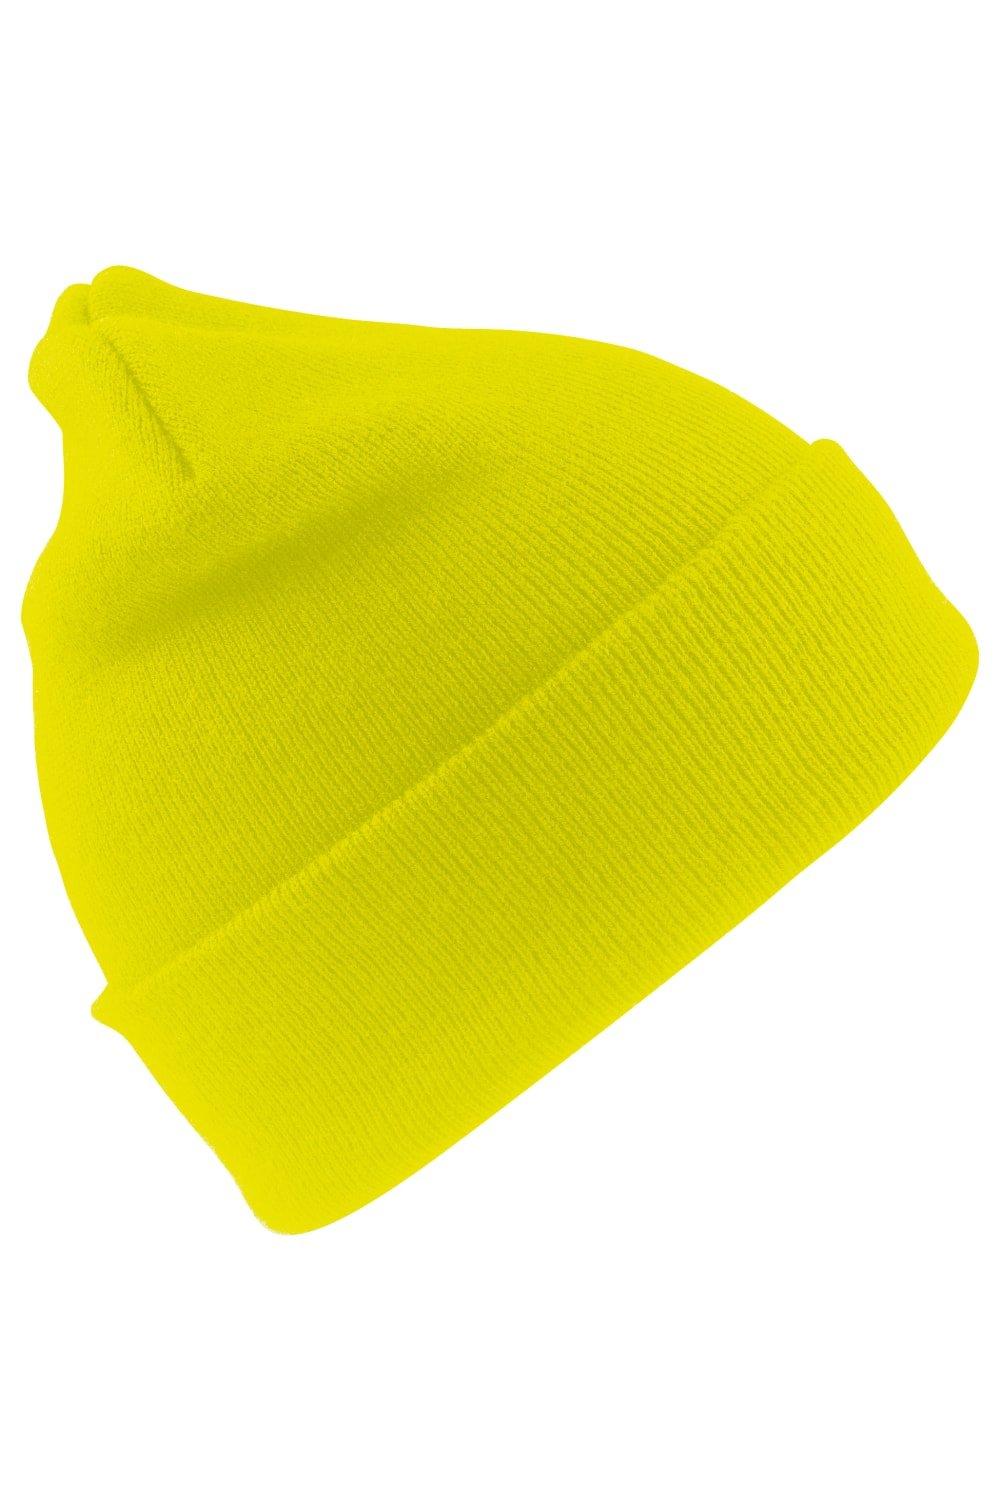 Шерстяная термолыжная/зимняя шапка с утеплителем Thinsulate 3M Result, желтый пряжа семеновская пряжа lina 59 темно синий 5 шт по 100 г